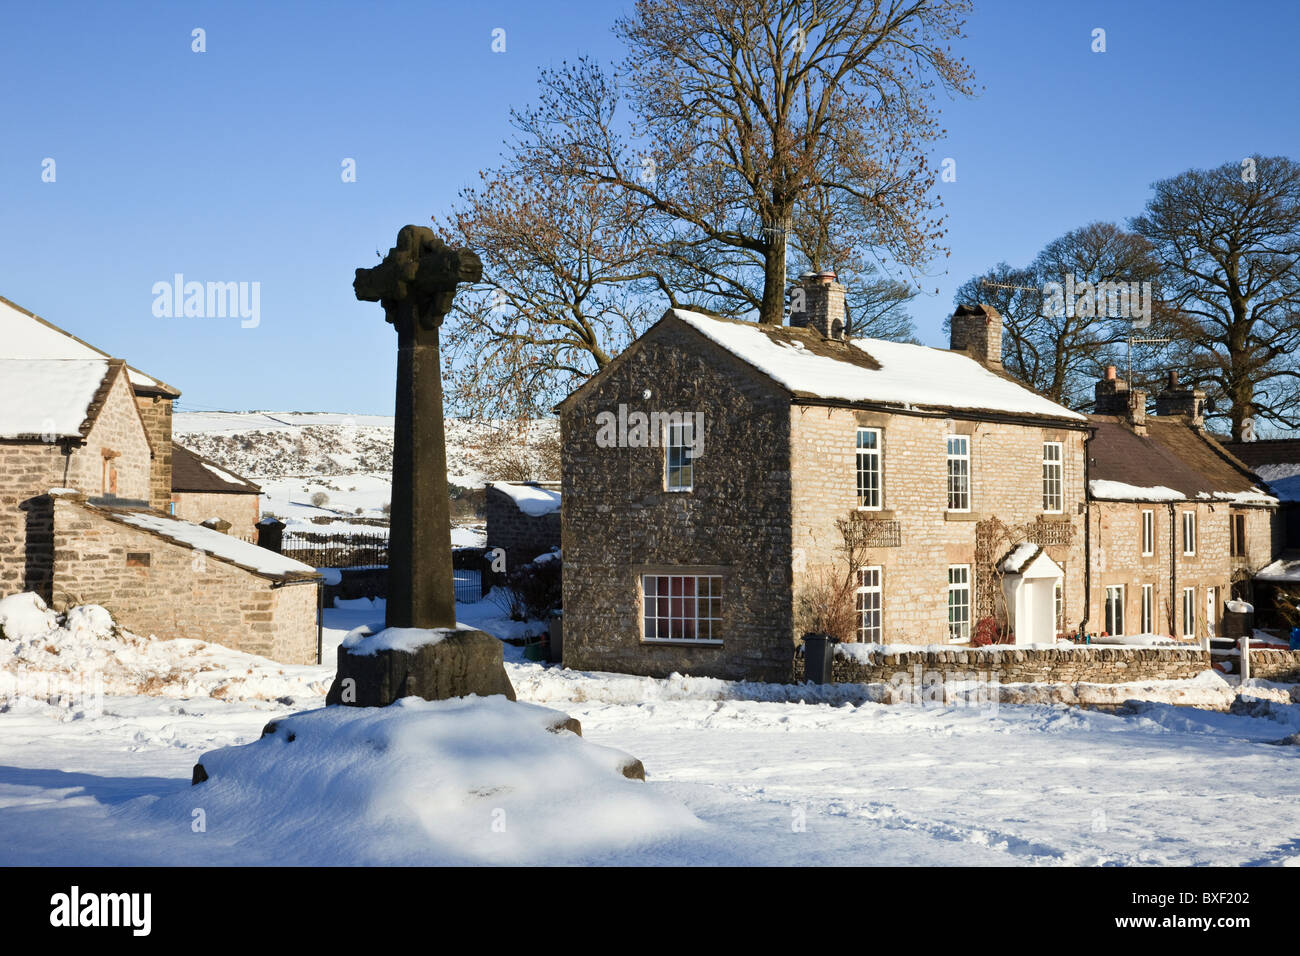 14e siècle en pierre de croix dans le Dovedale village green avec de la neige en hiver 2010. Foolow, Derbyshire, Angleterre, Royaume-Uni, Grande Bretagne. Banque D'Images